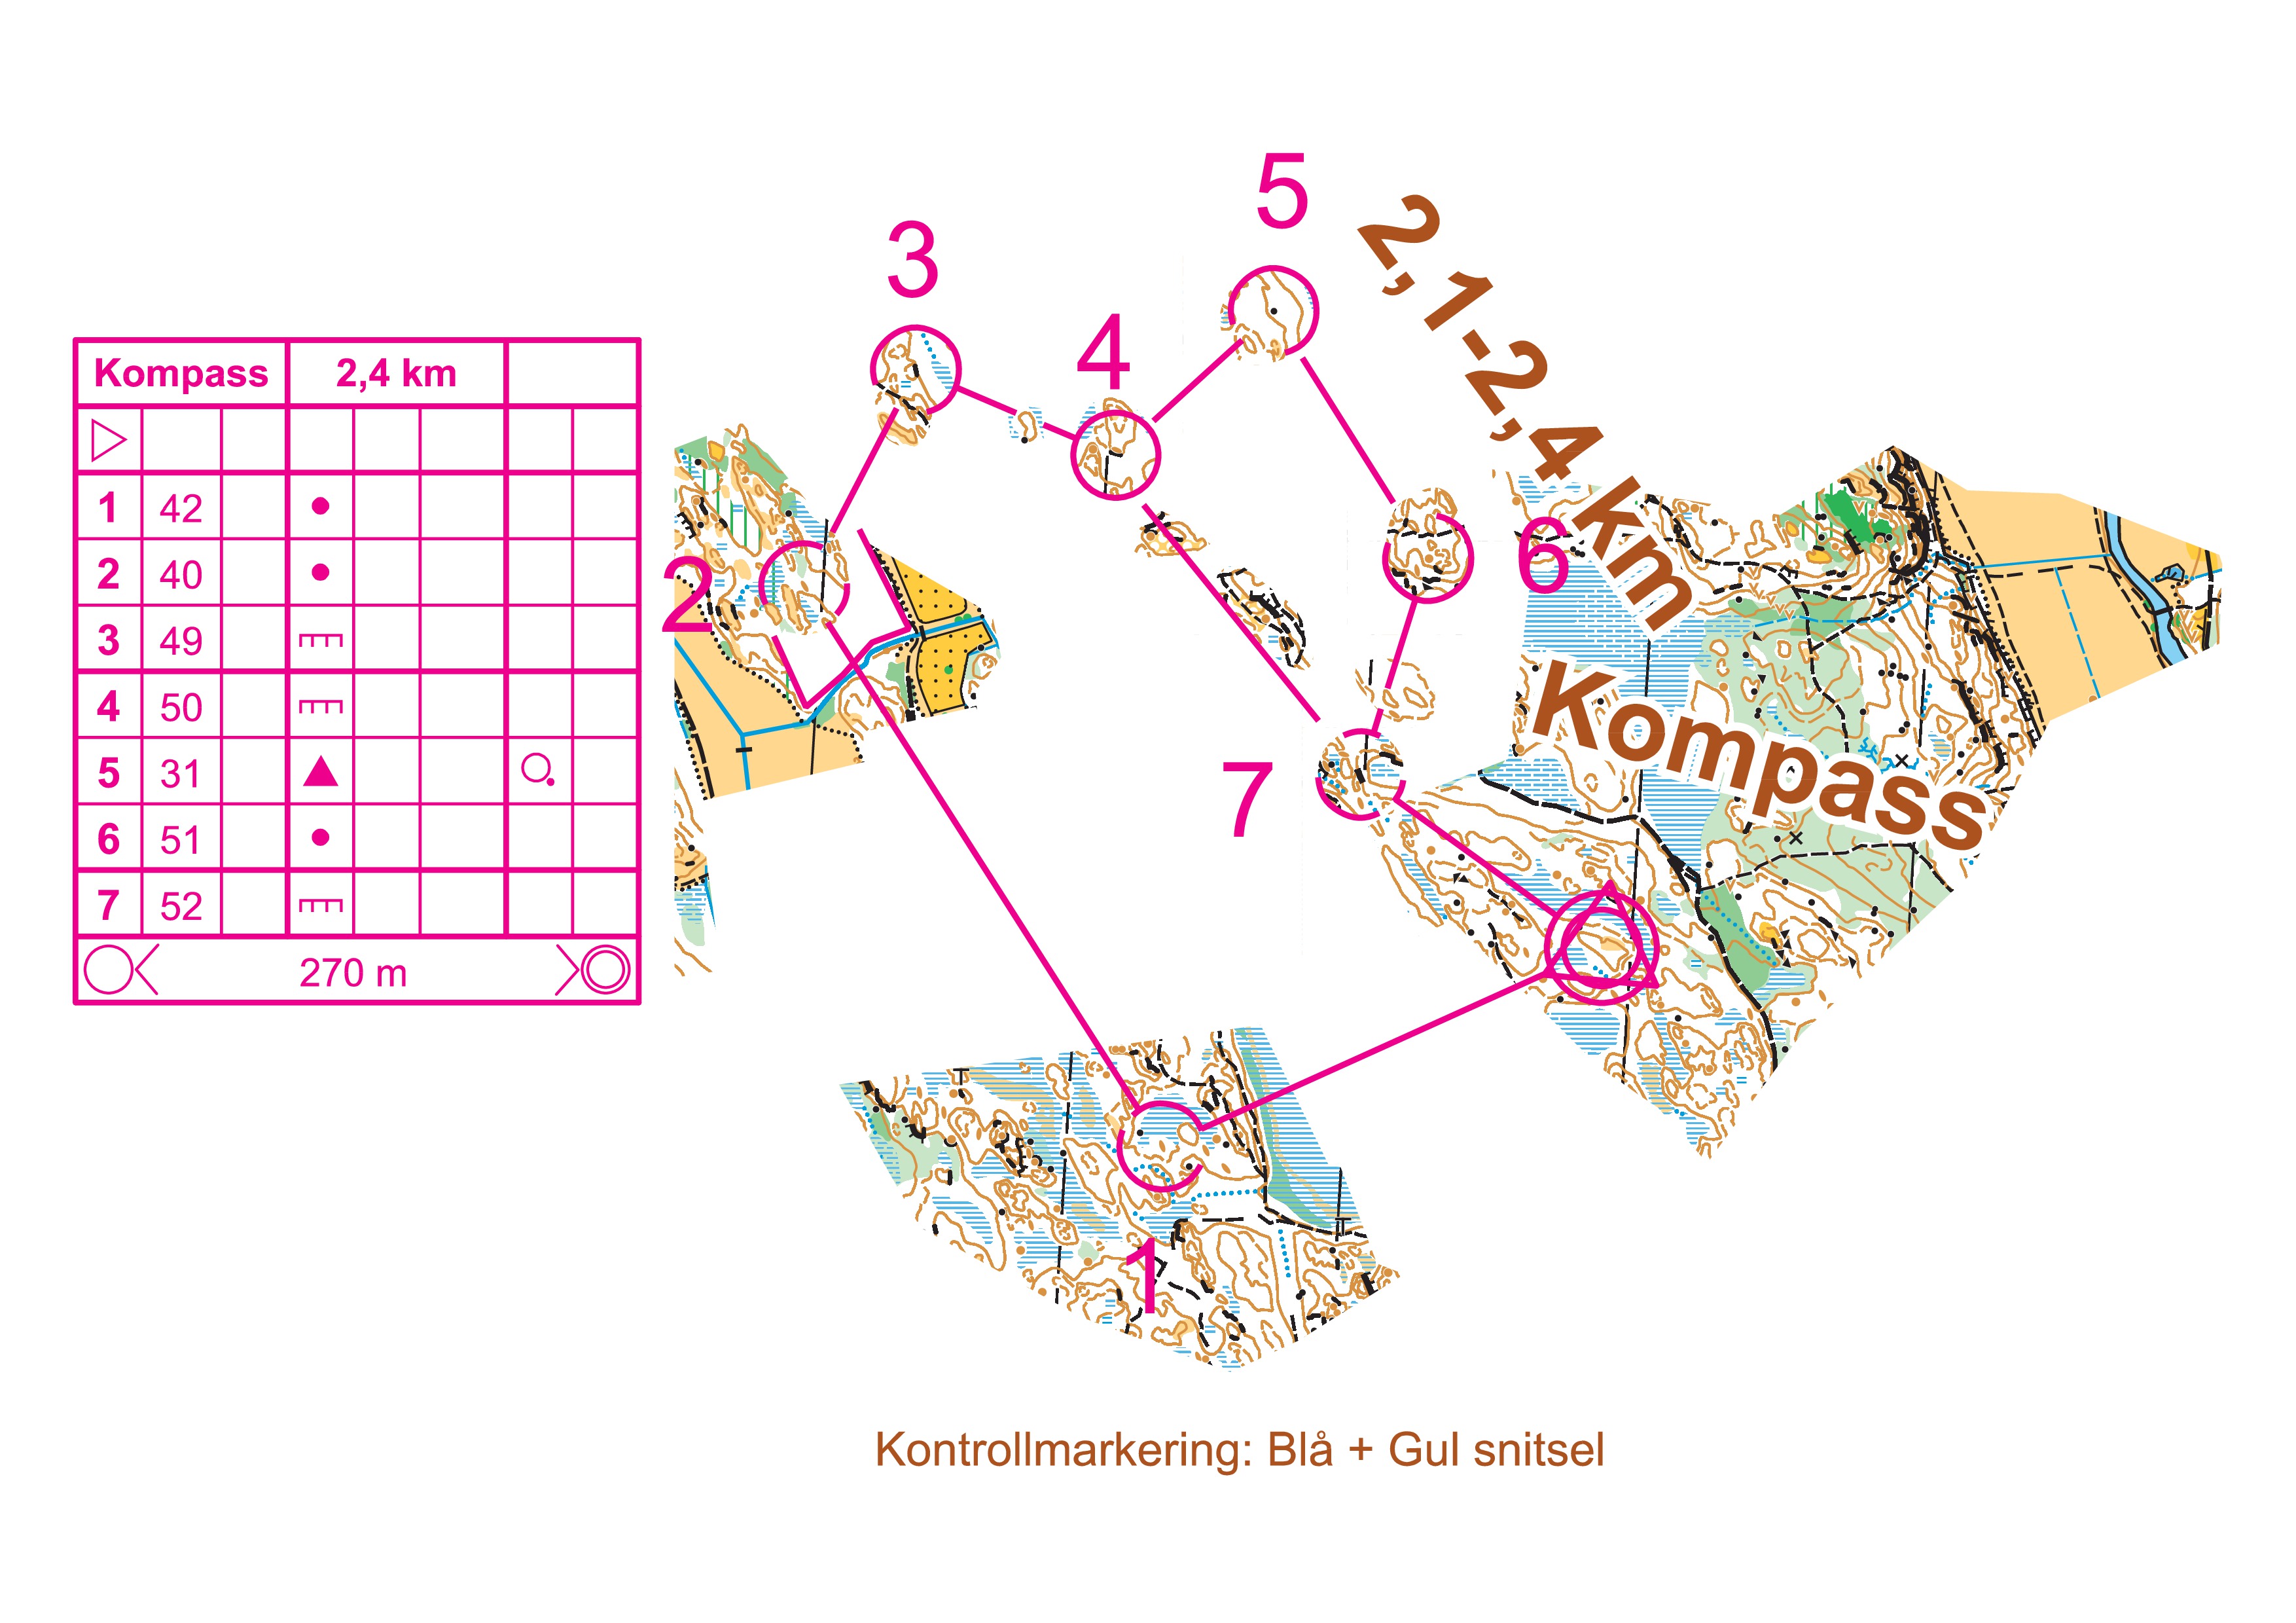 Nåsten Kompass (2013-06-21)